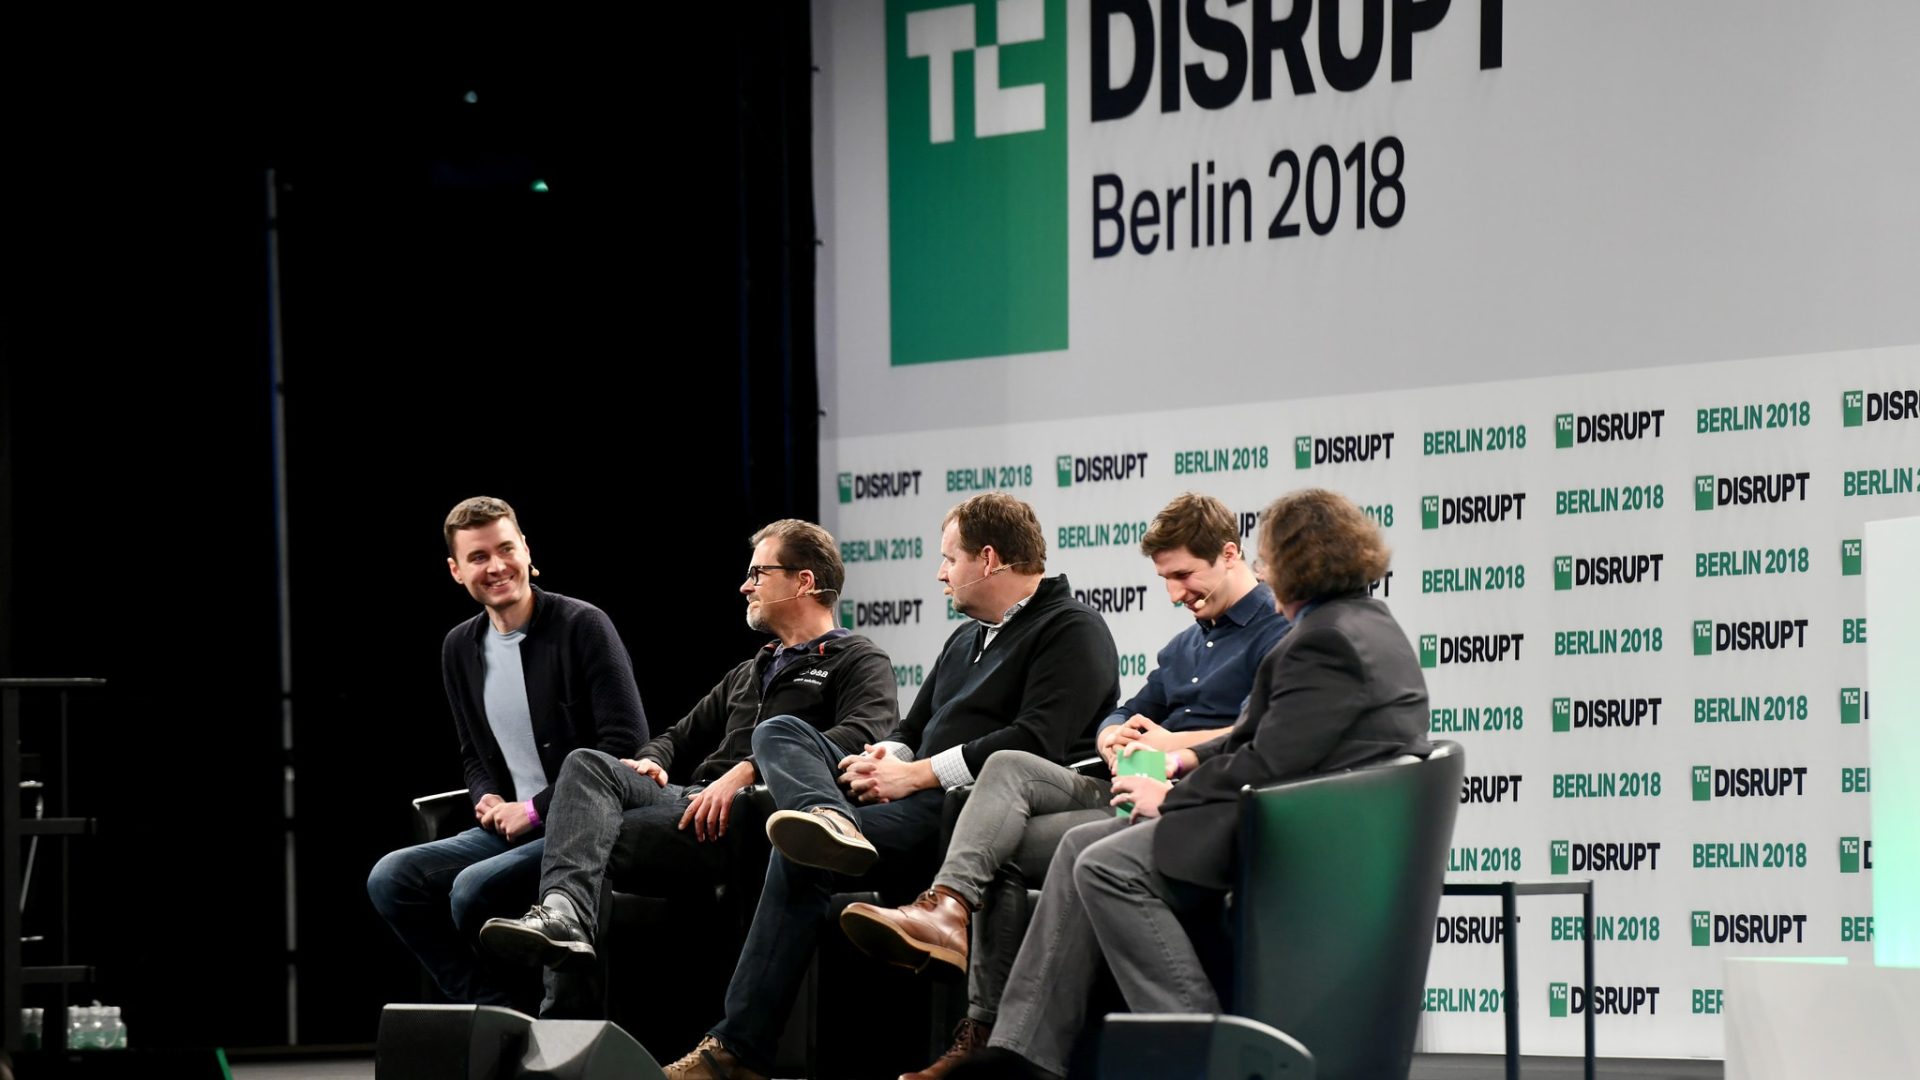 endurosat at techcrunch disrupt berlin 2018 1